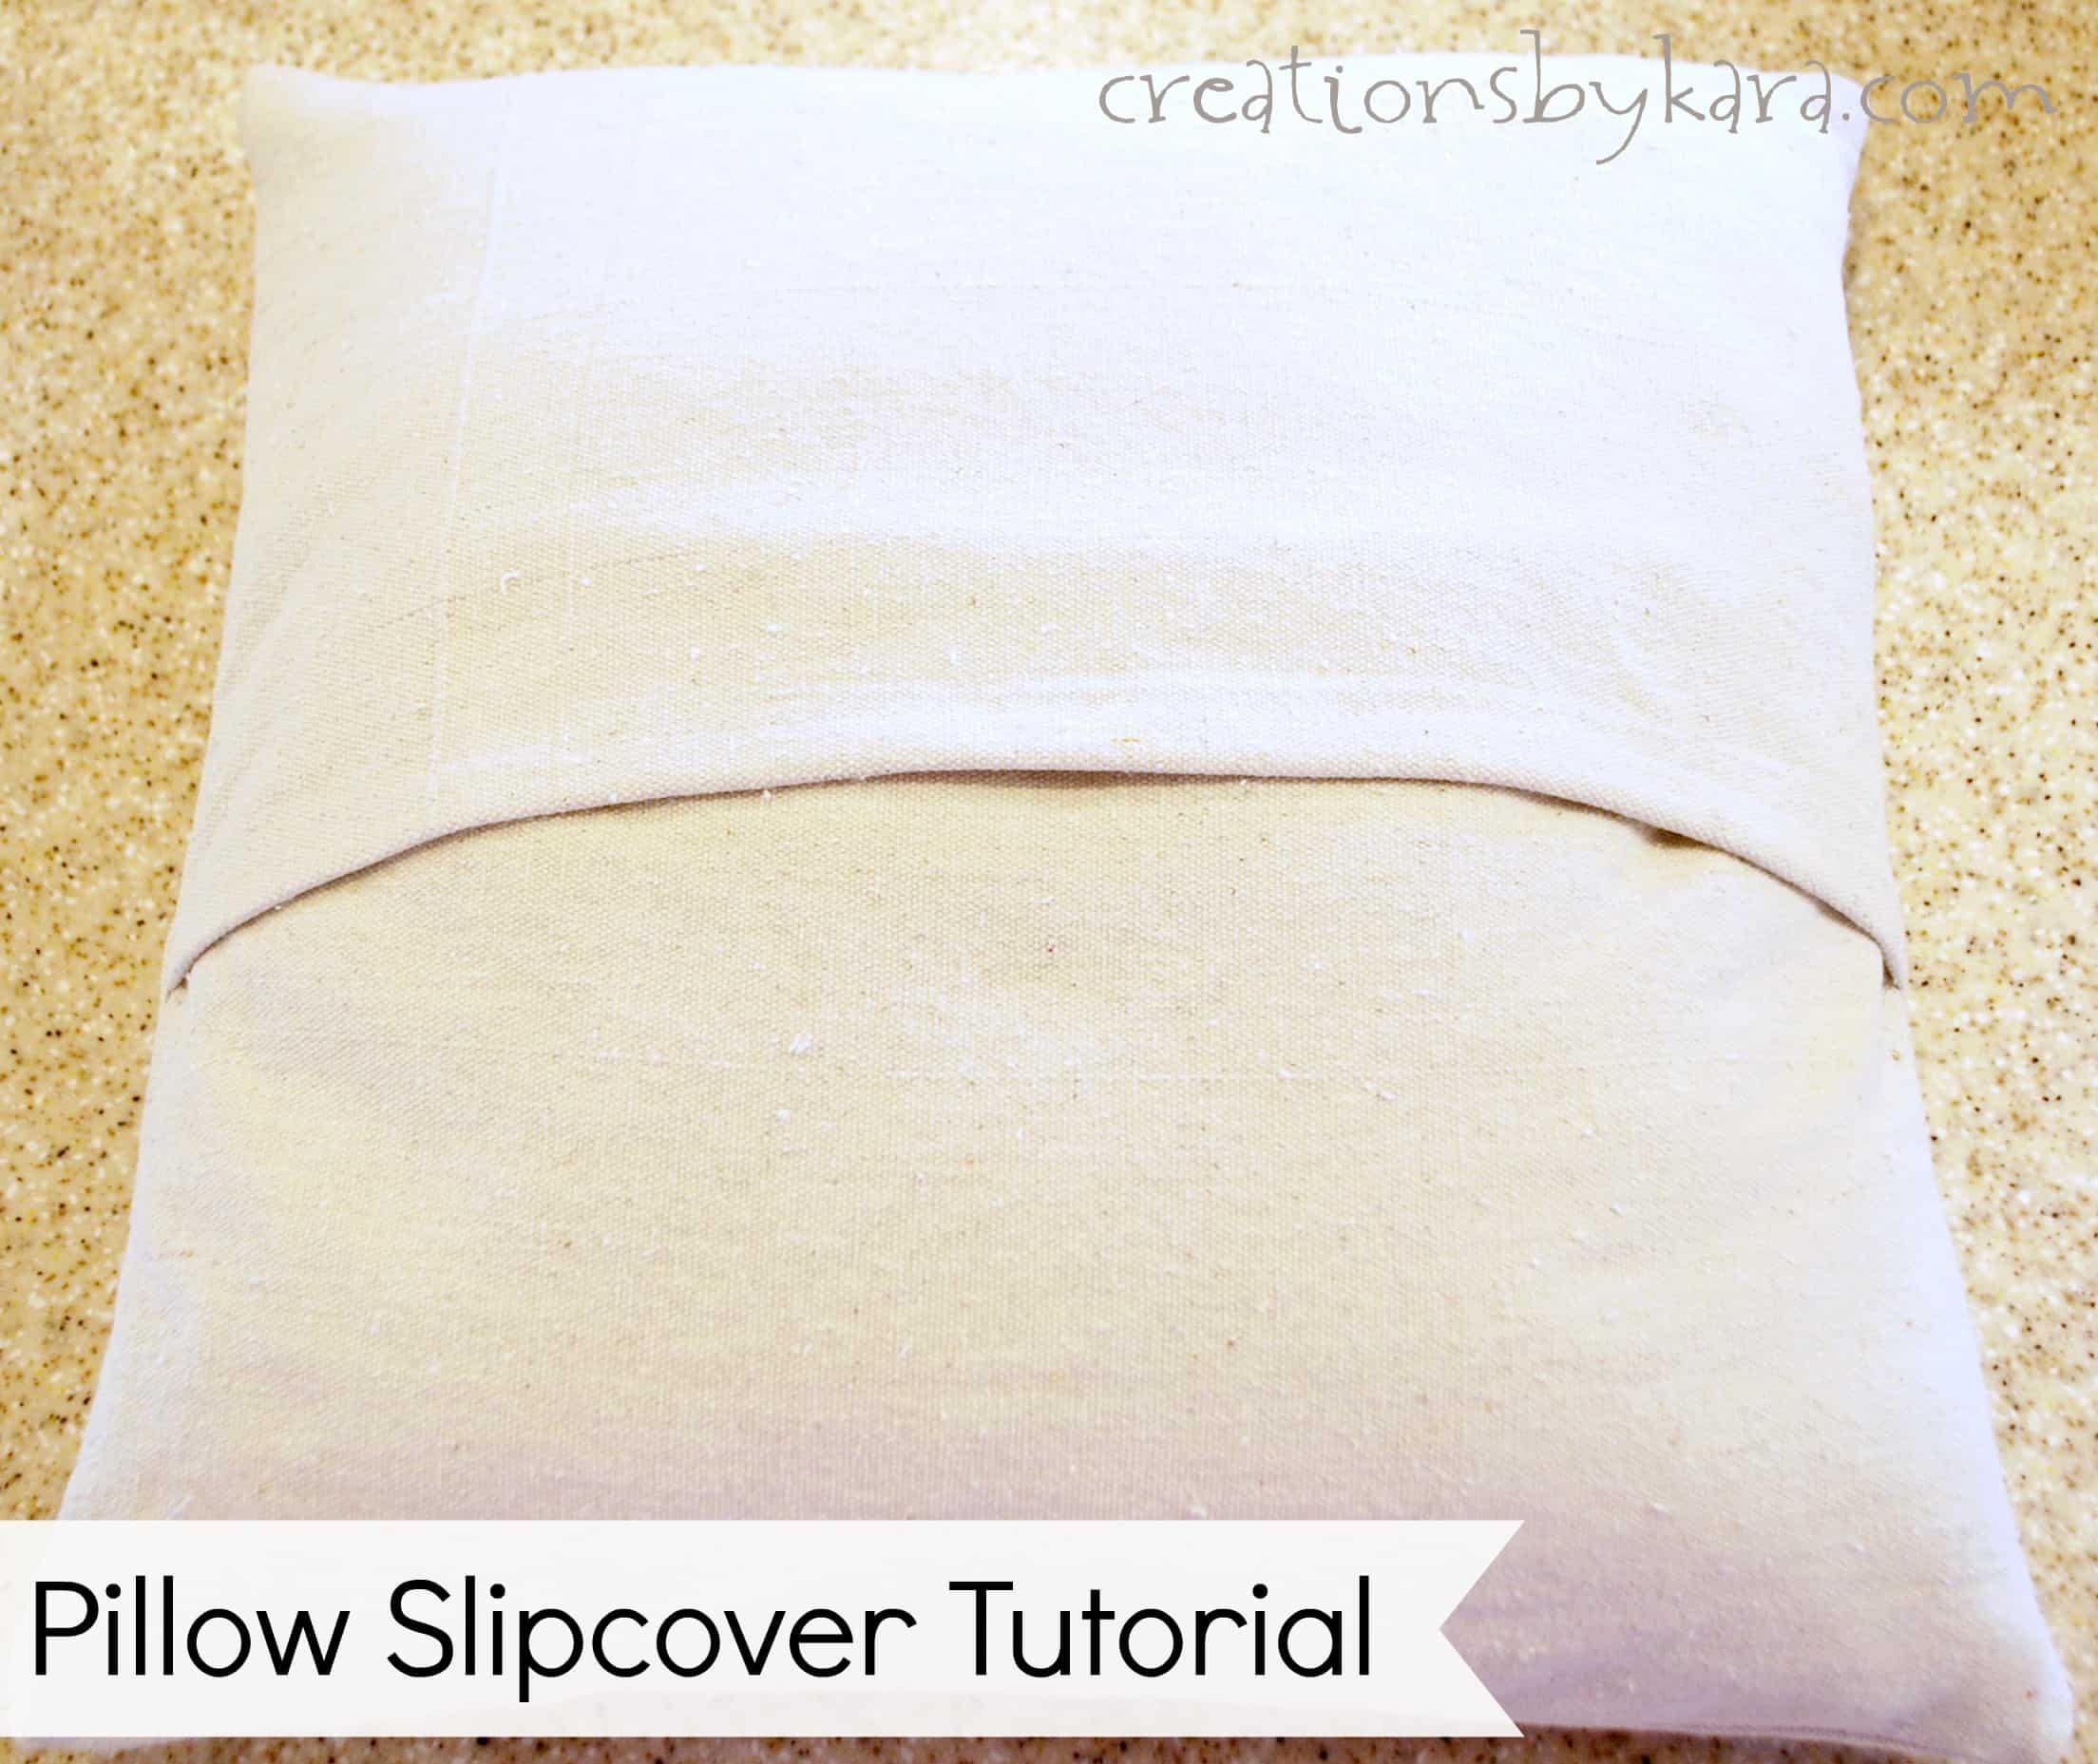 Pillow Slipcover Tutorial